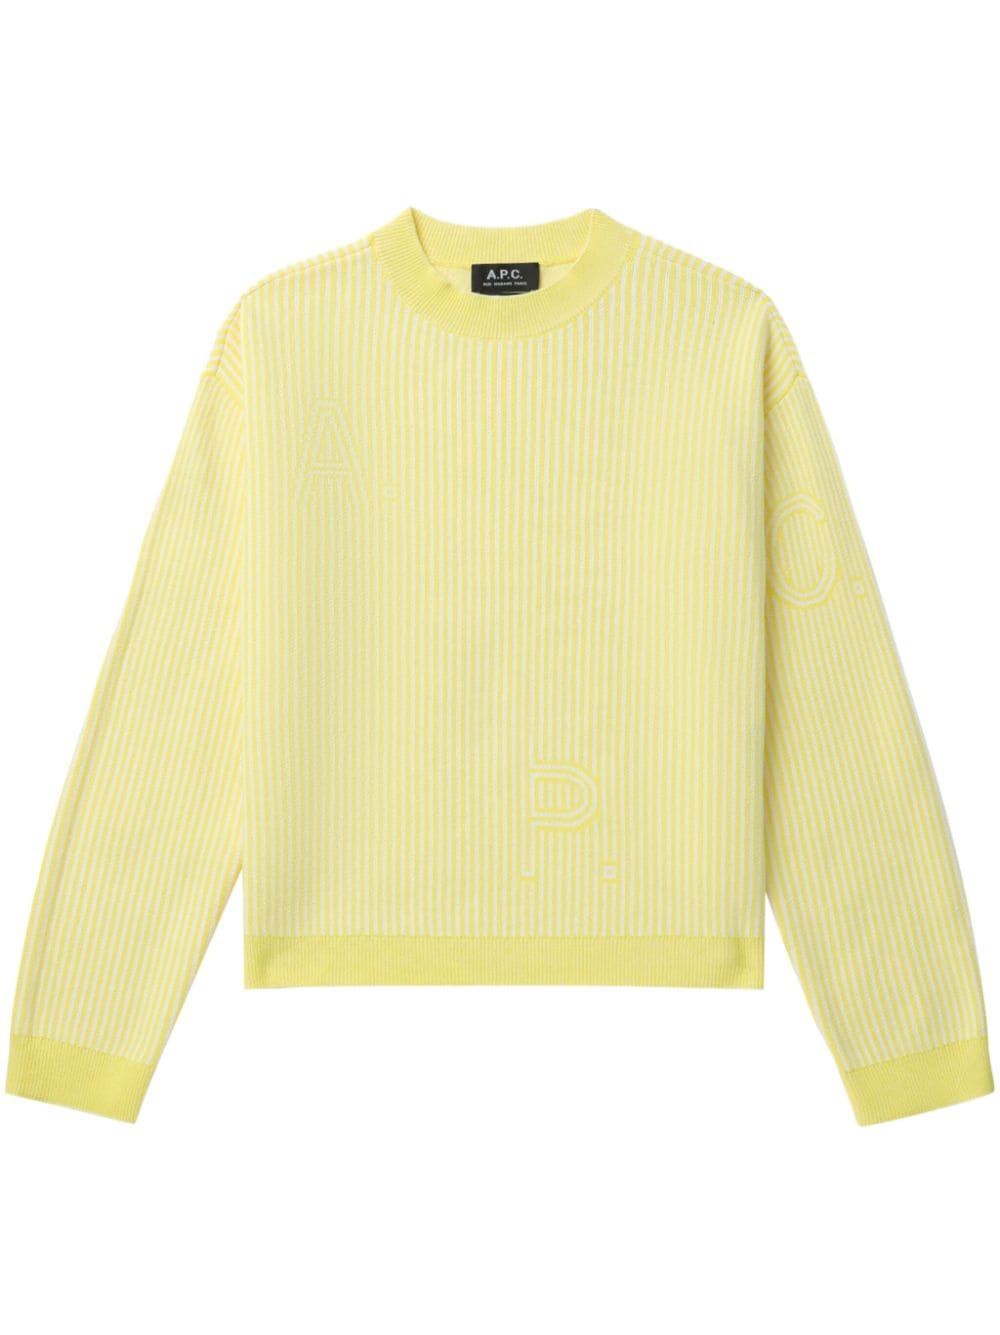 A.P.C. striped cotton jumper - Yellow von A.P.C.